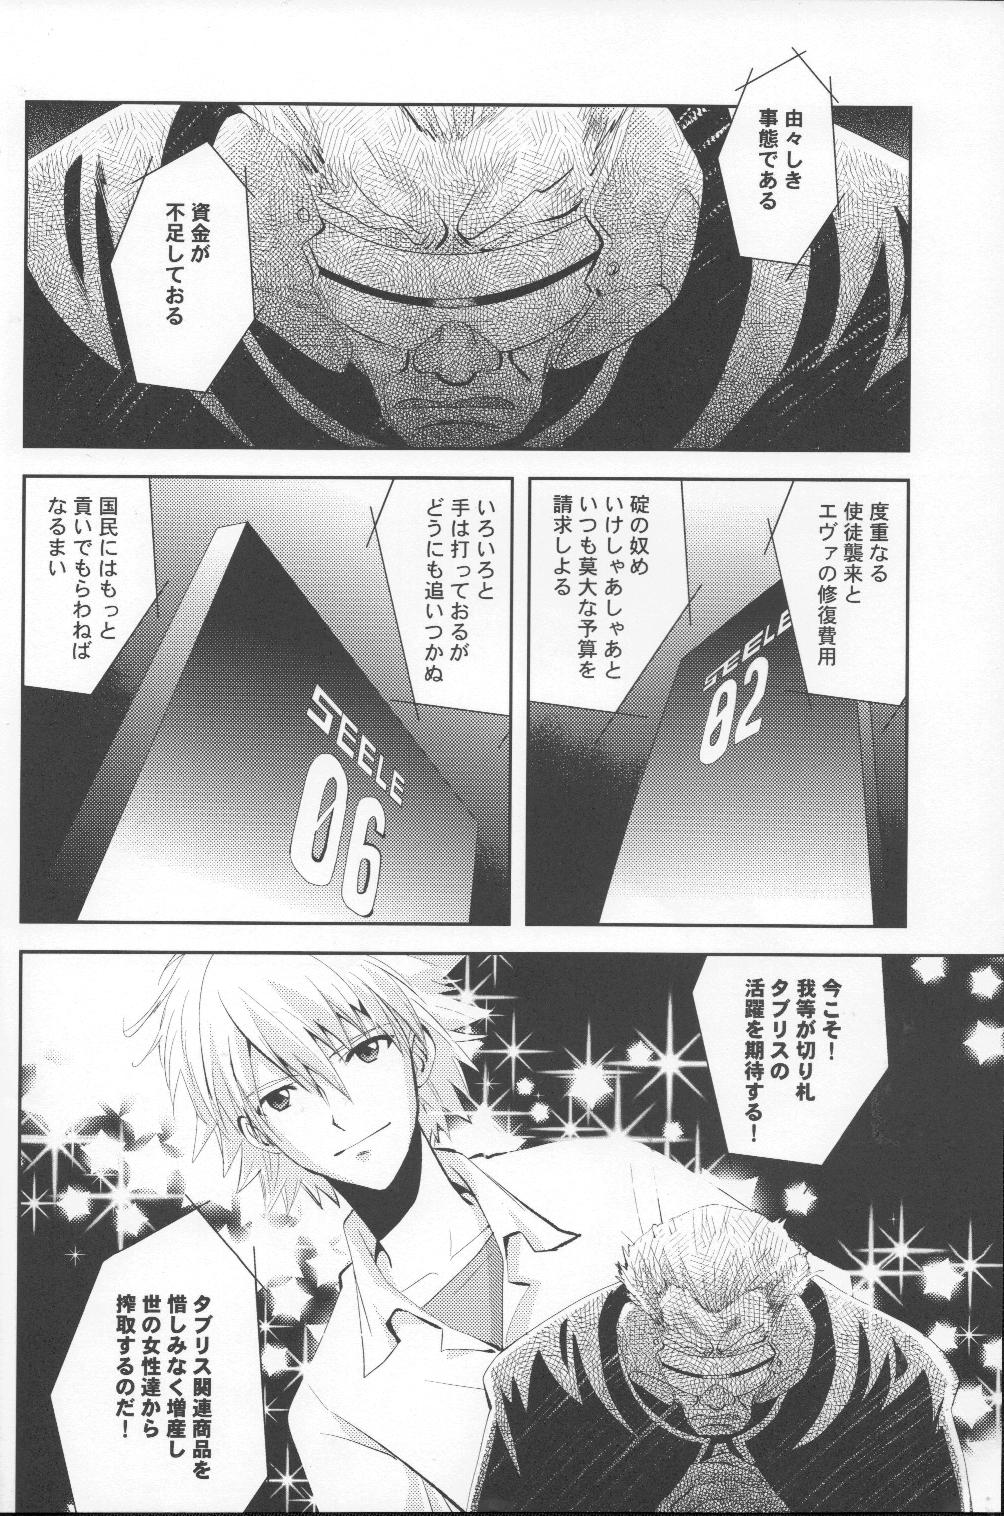 Smoking Tsuki ga Kirei da ne - Neon genesis evangelion Audition - Page 3